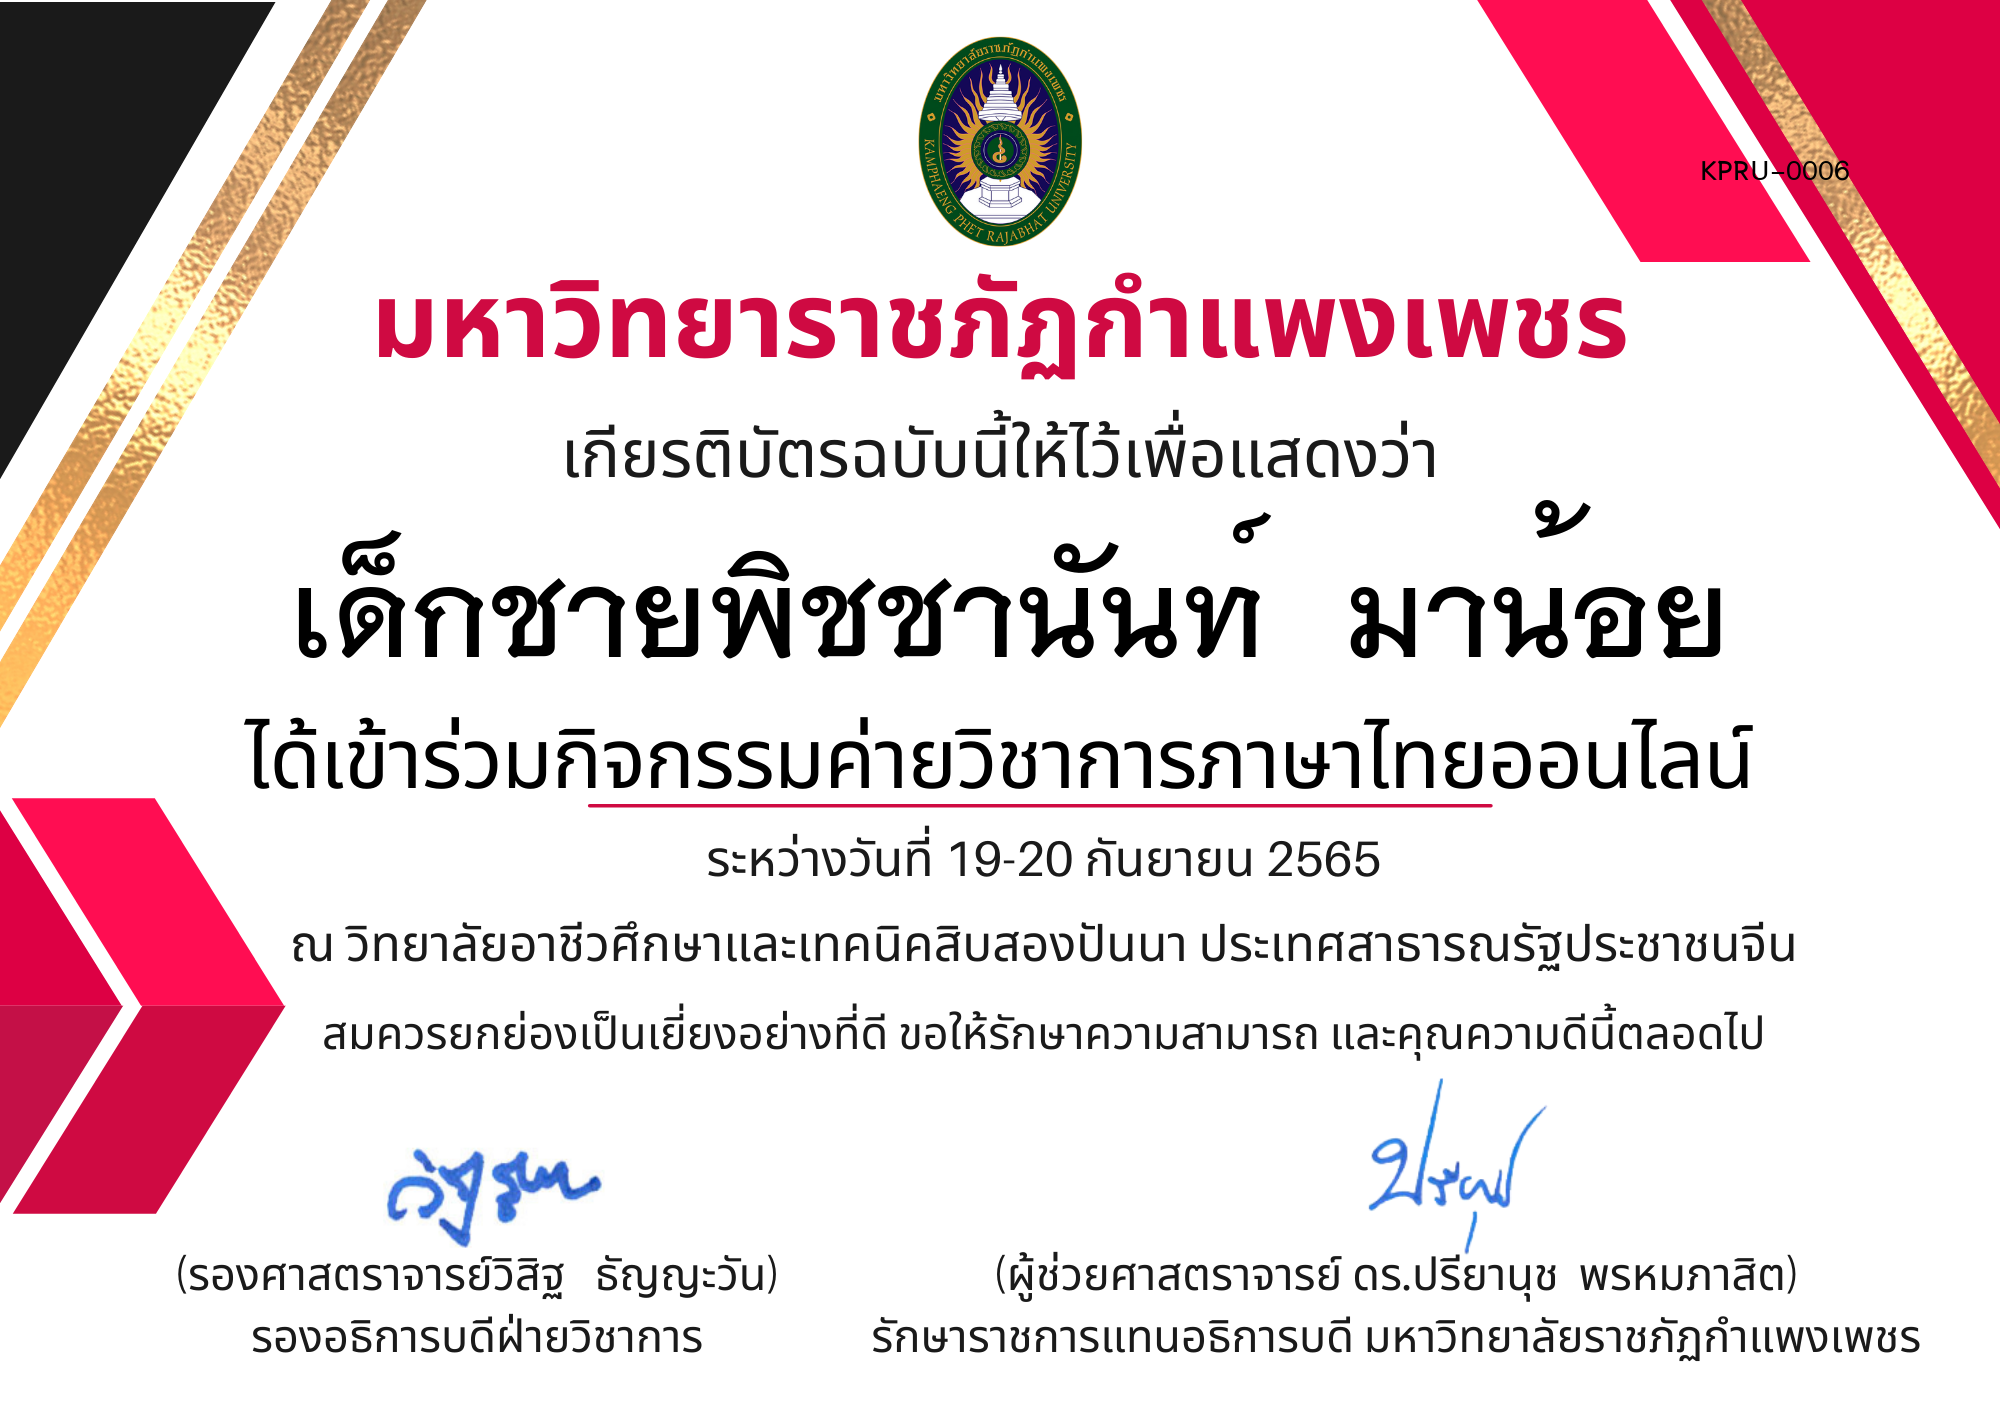 เกียรติบัตร กิจกรรมค่ายวิชาการภาษาไทยออนไลน์ ของ เด็กชายพิชชานันท์  มาน้อย